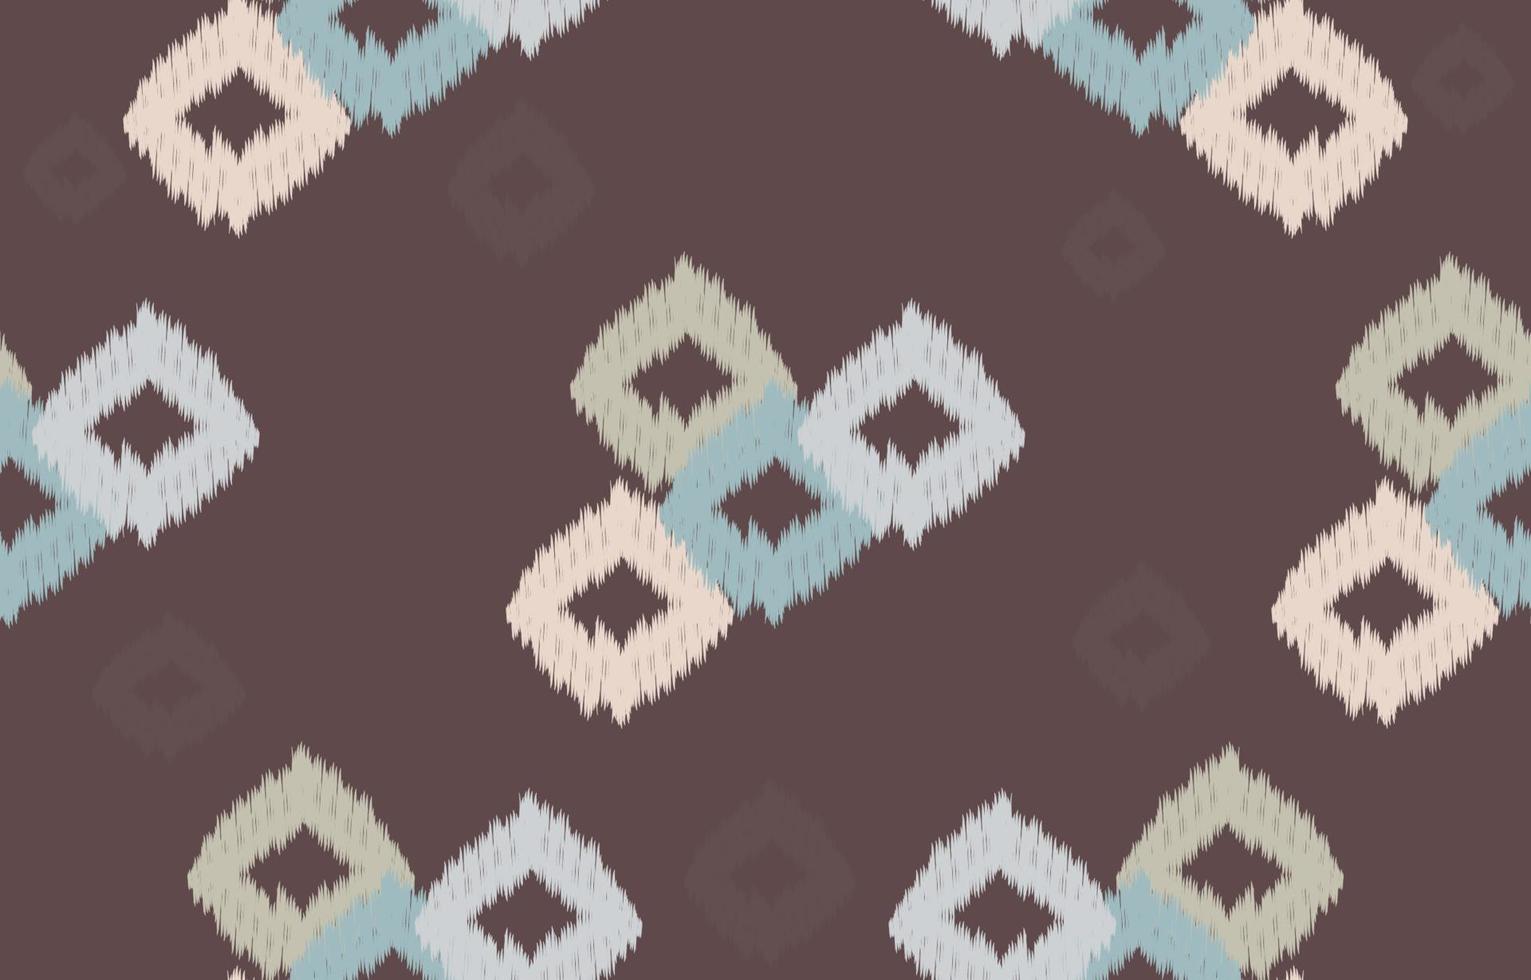 marron et couleur douce ikat motif géométrique ethnique oriental traditionnel broderie style.design pour le fond, tapis, tapis, papier peint, vêtements, emballage, batik, tissu, illustration vectorielle. vecteur